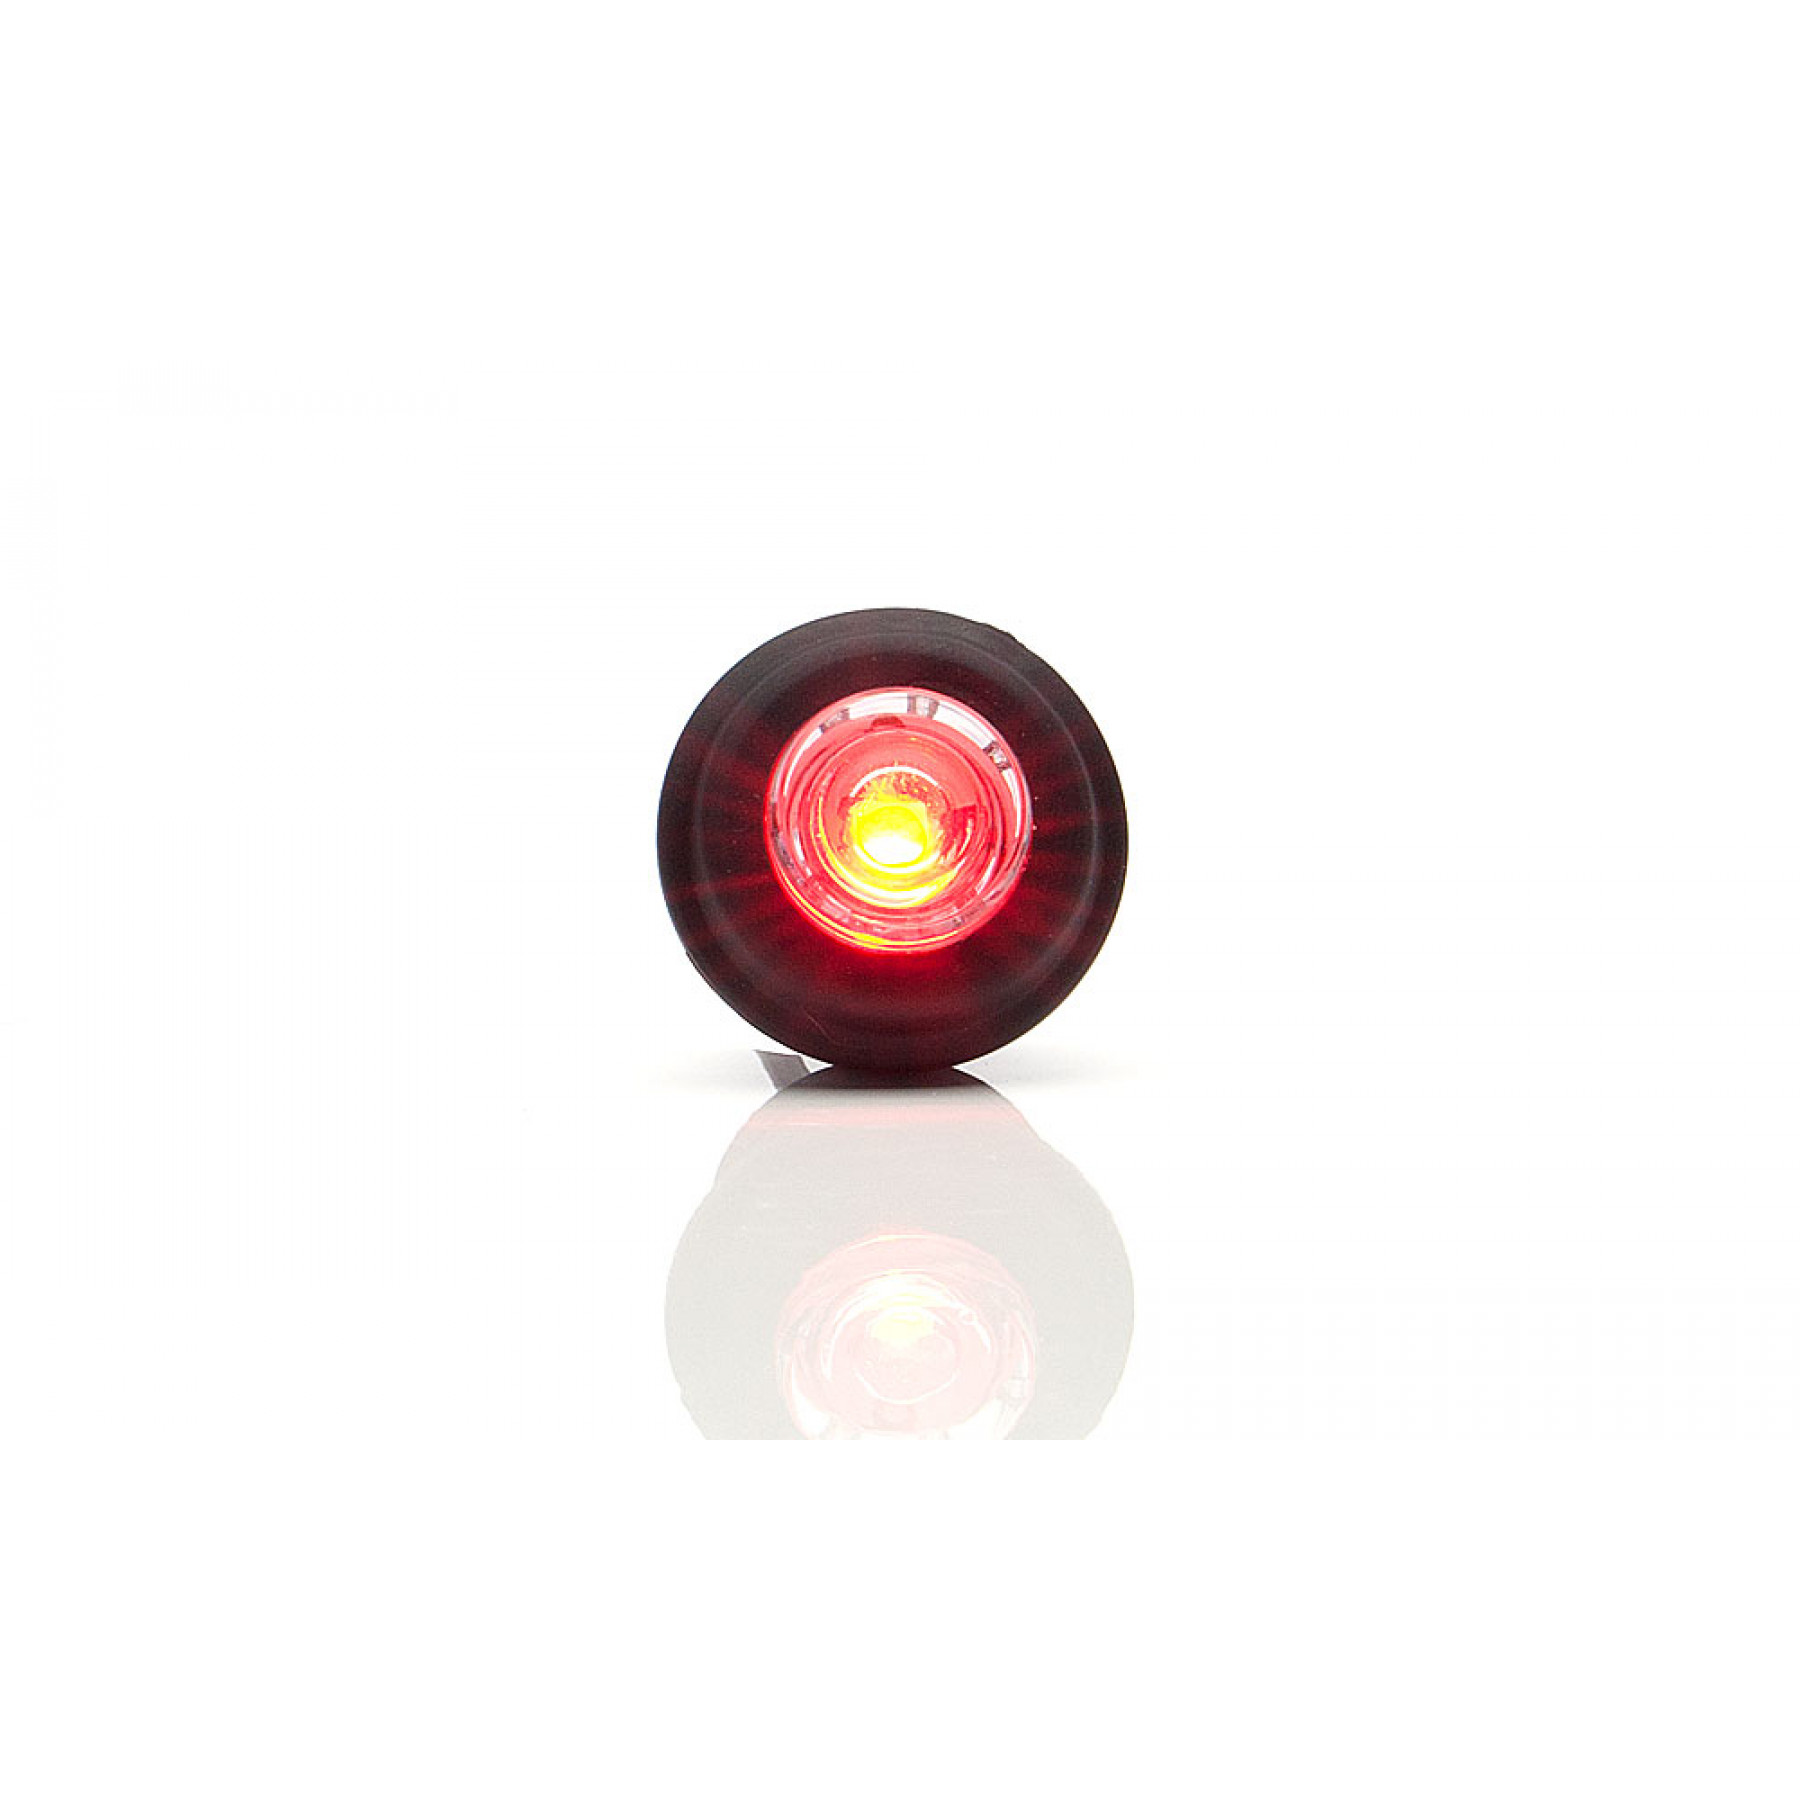 Markeringslamp LED rood 12/24v inbouw 21mm